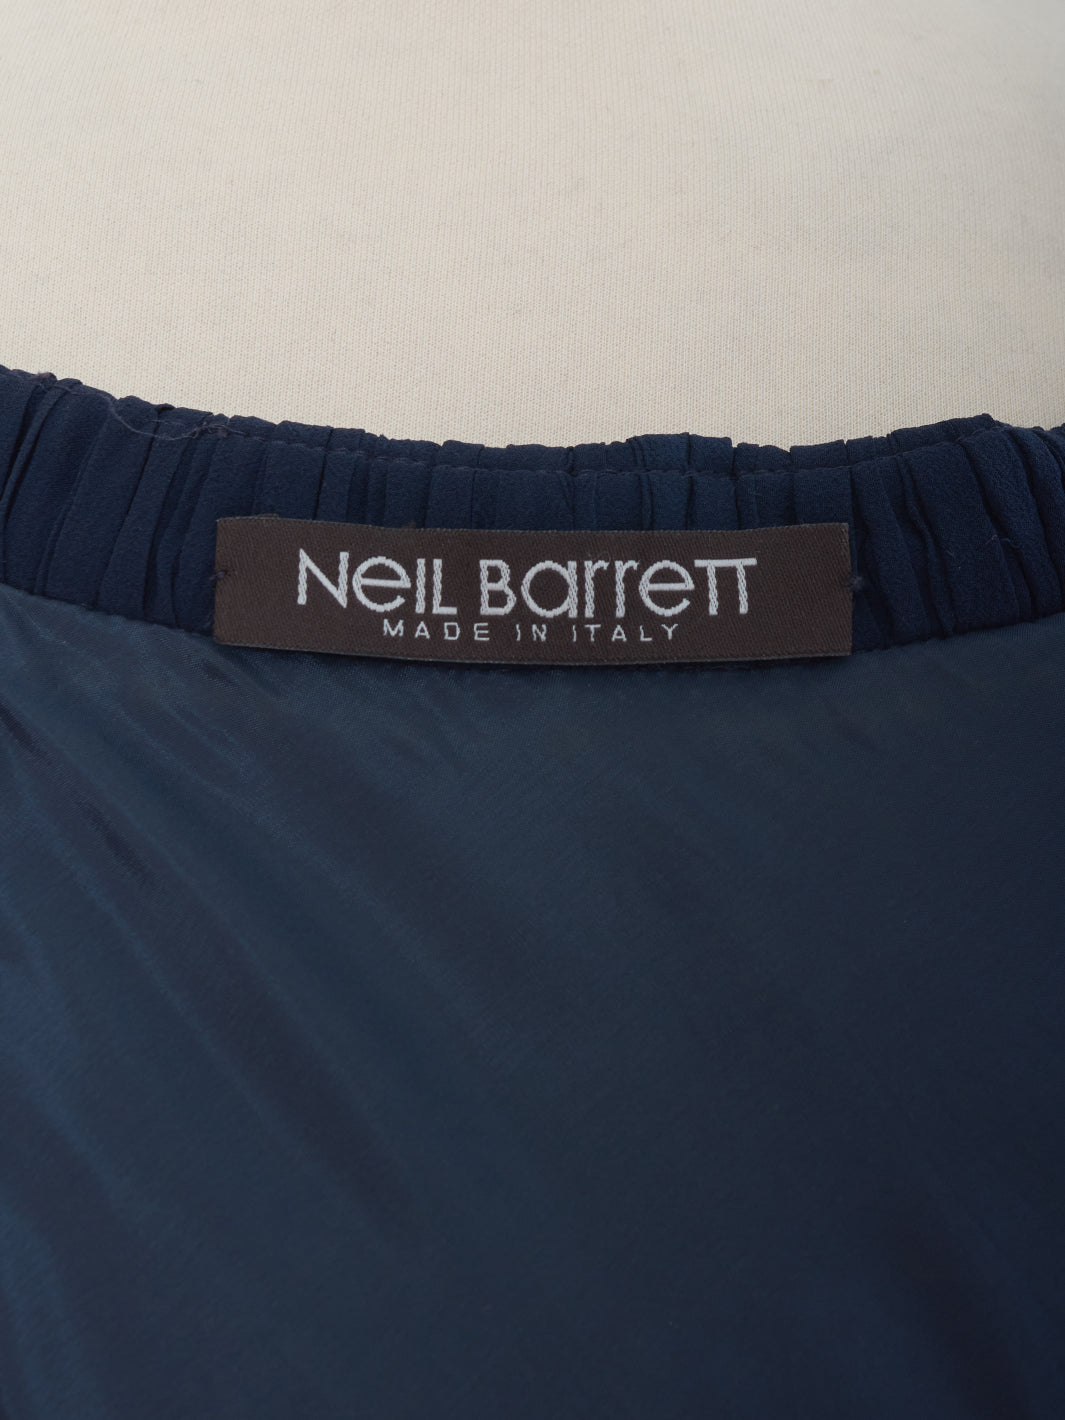 Neil Barrett Tulle Dress